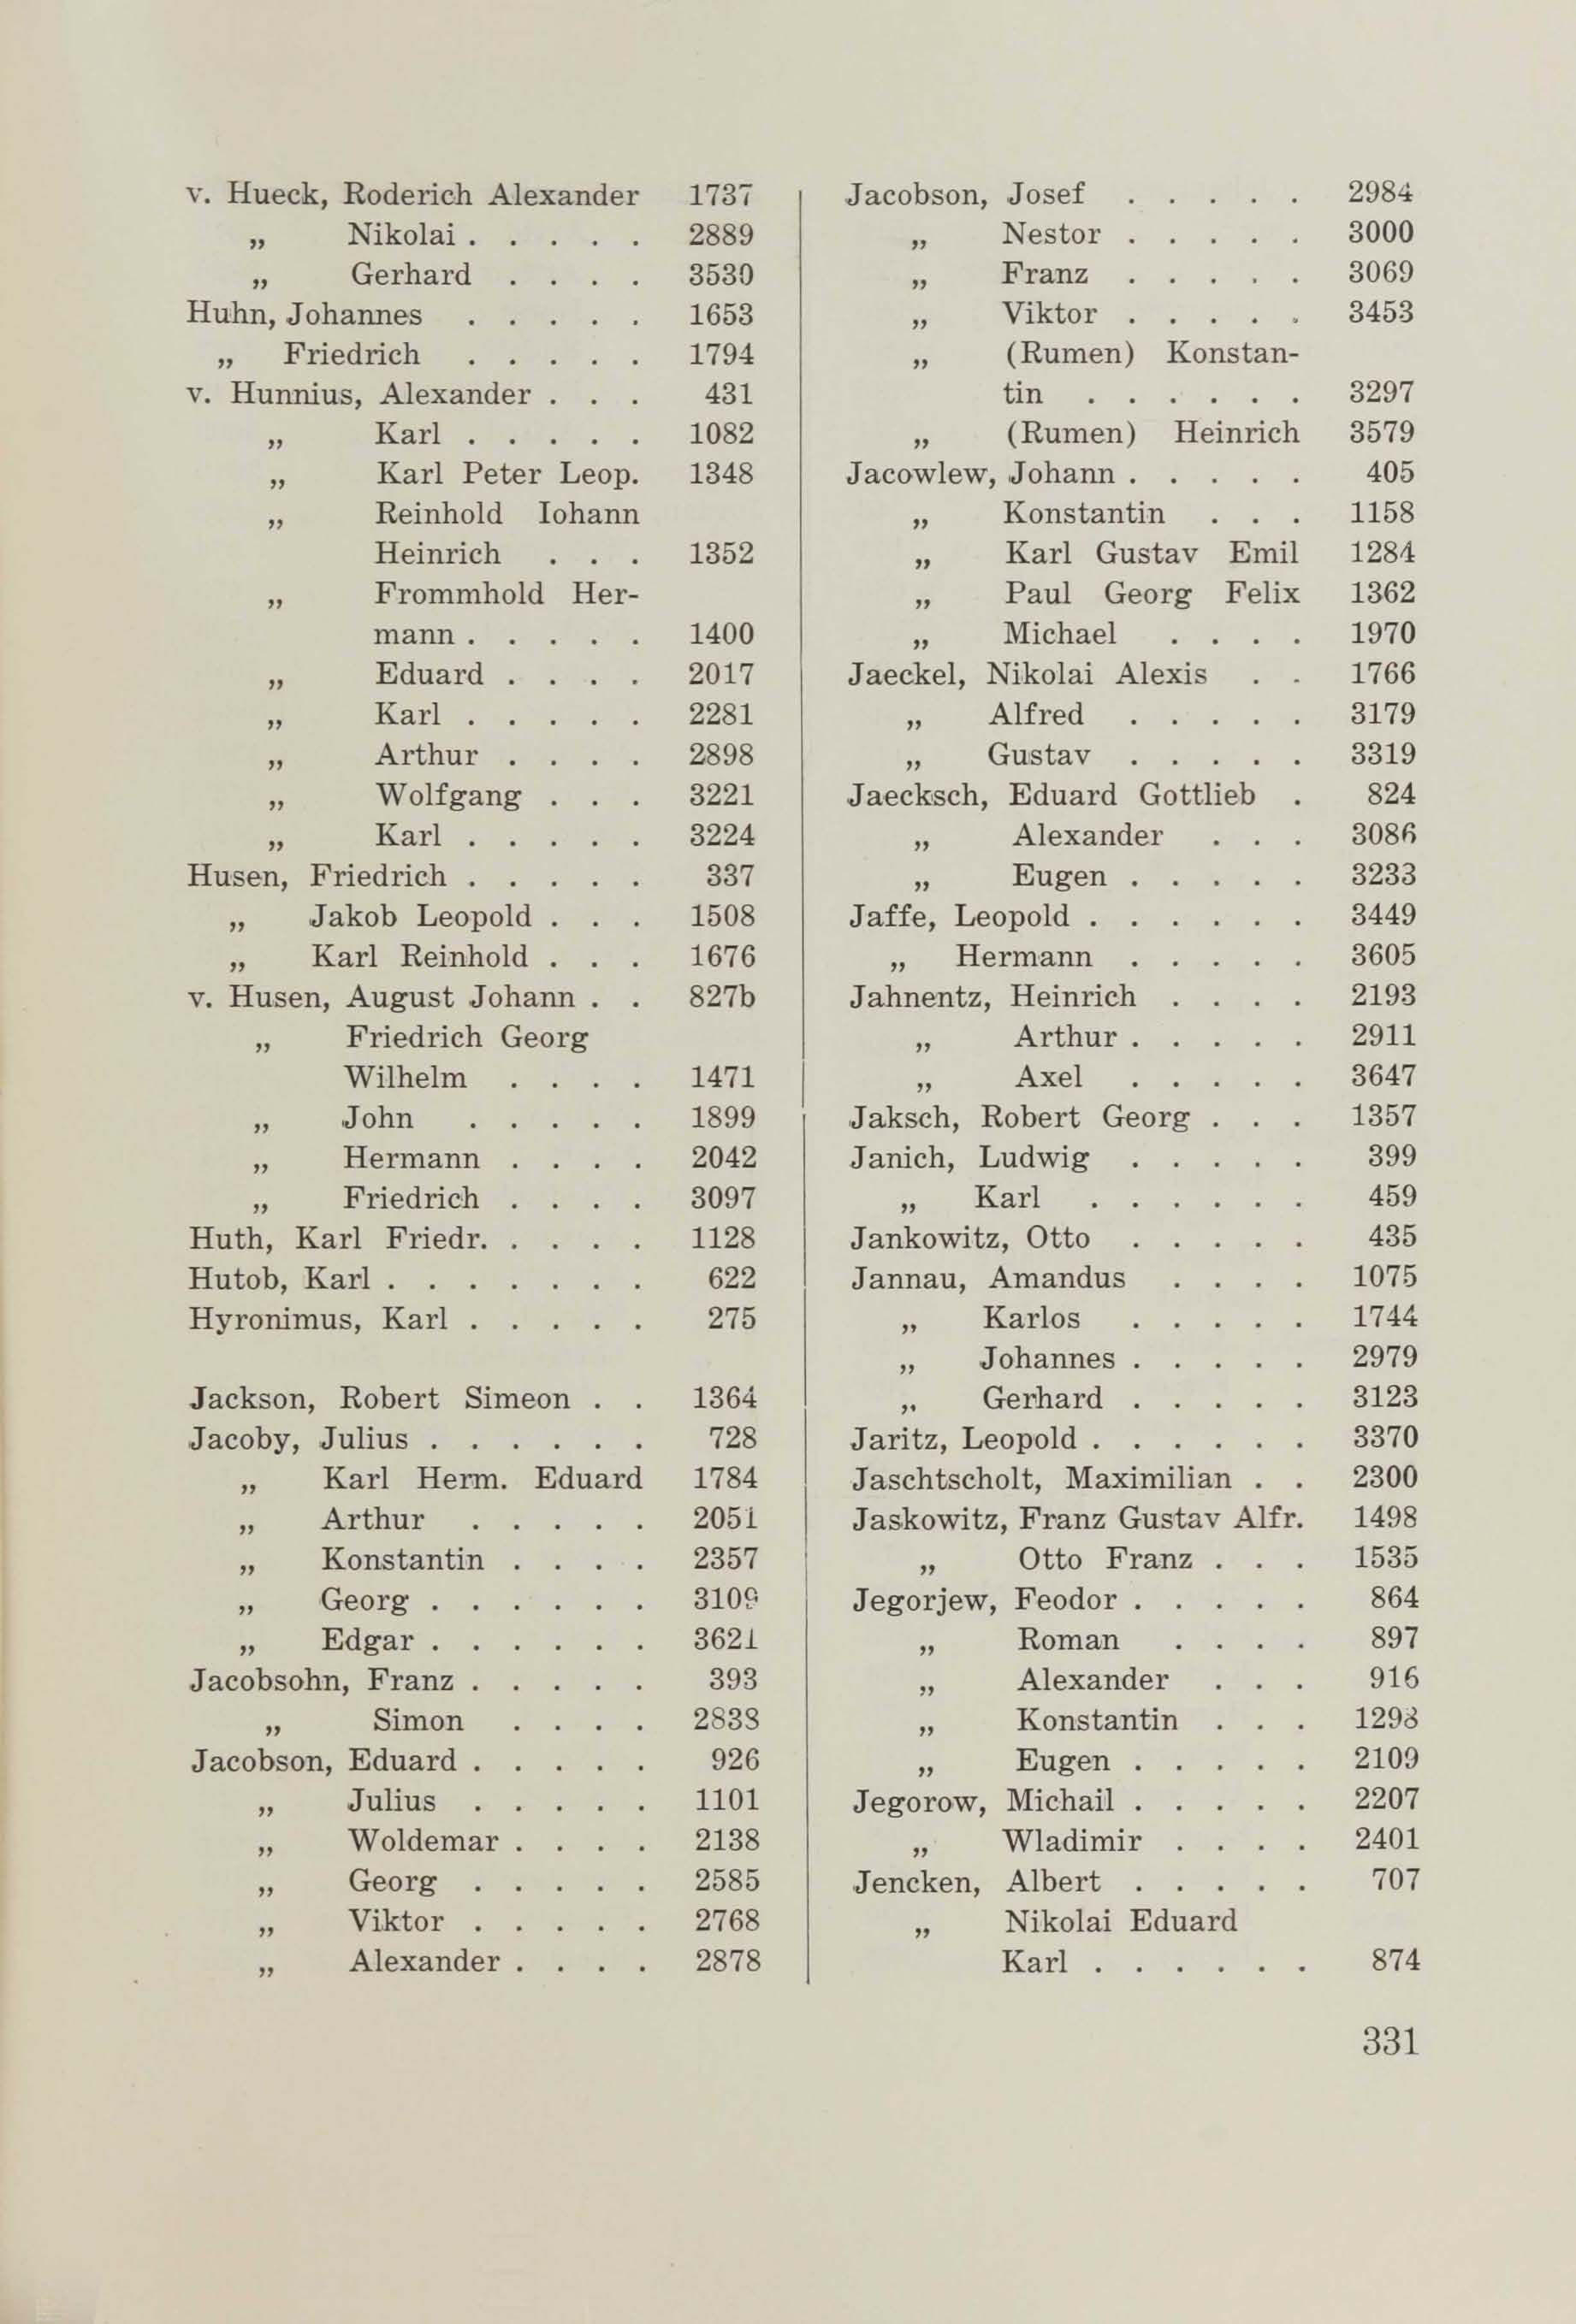 Schüler-Verzeichnis des Revalschen Gouvernements-Gymnasiums 1805–1890 (1931) | 341. (331) Main body of text